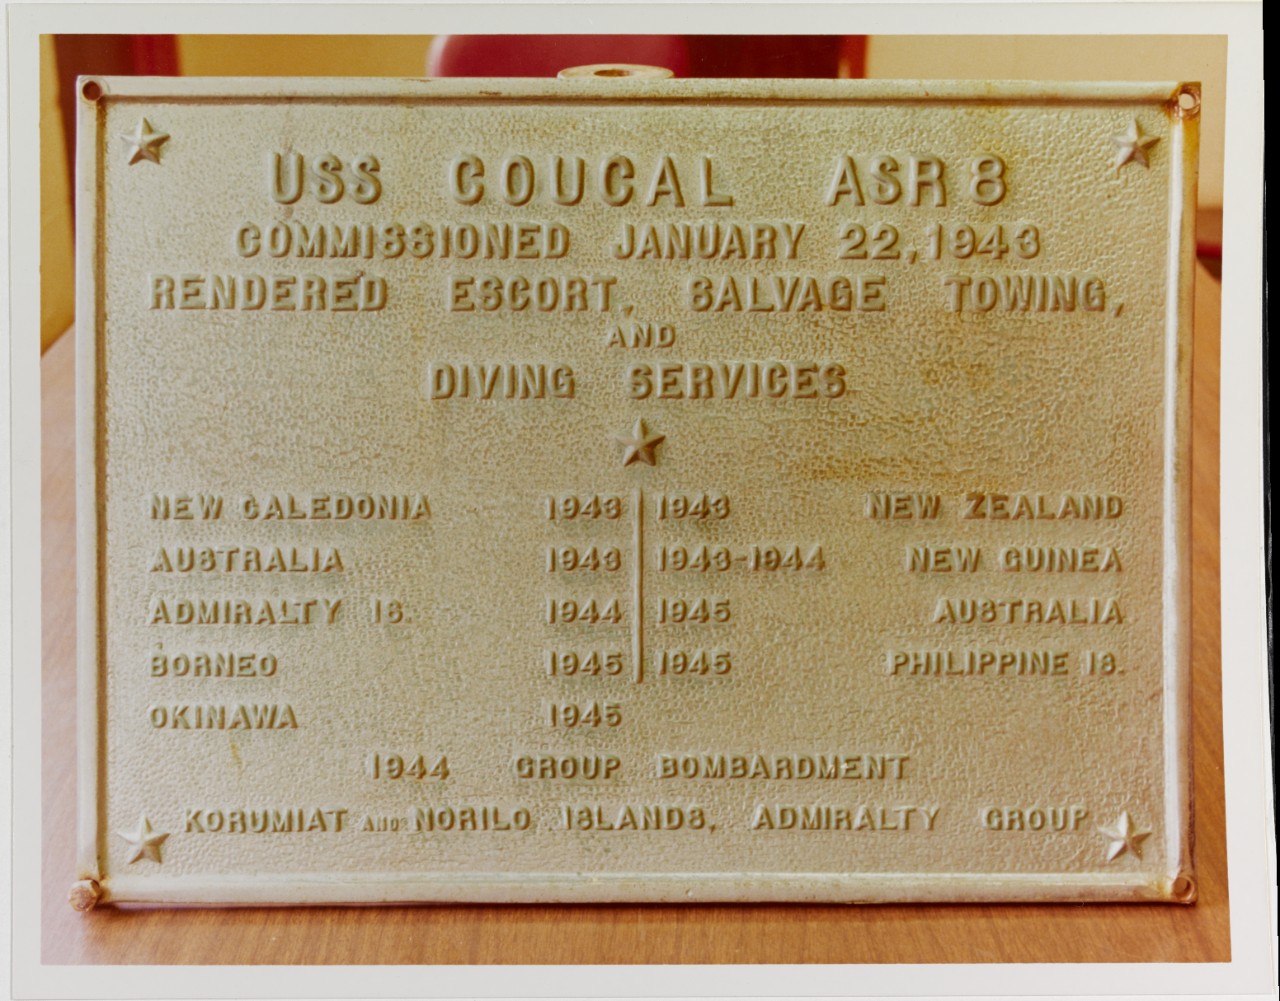 USS COUCAL (ASR-8)